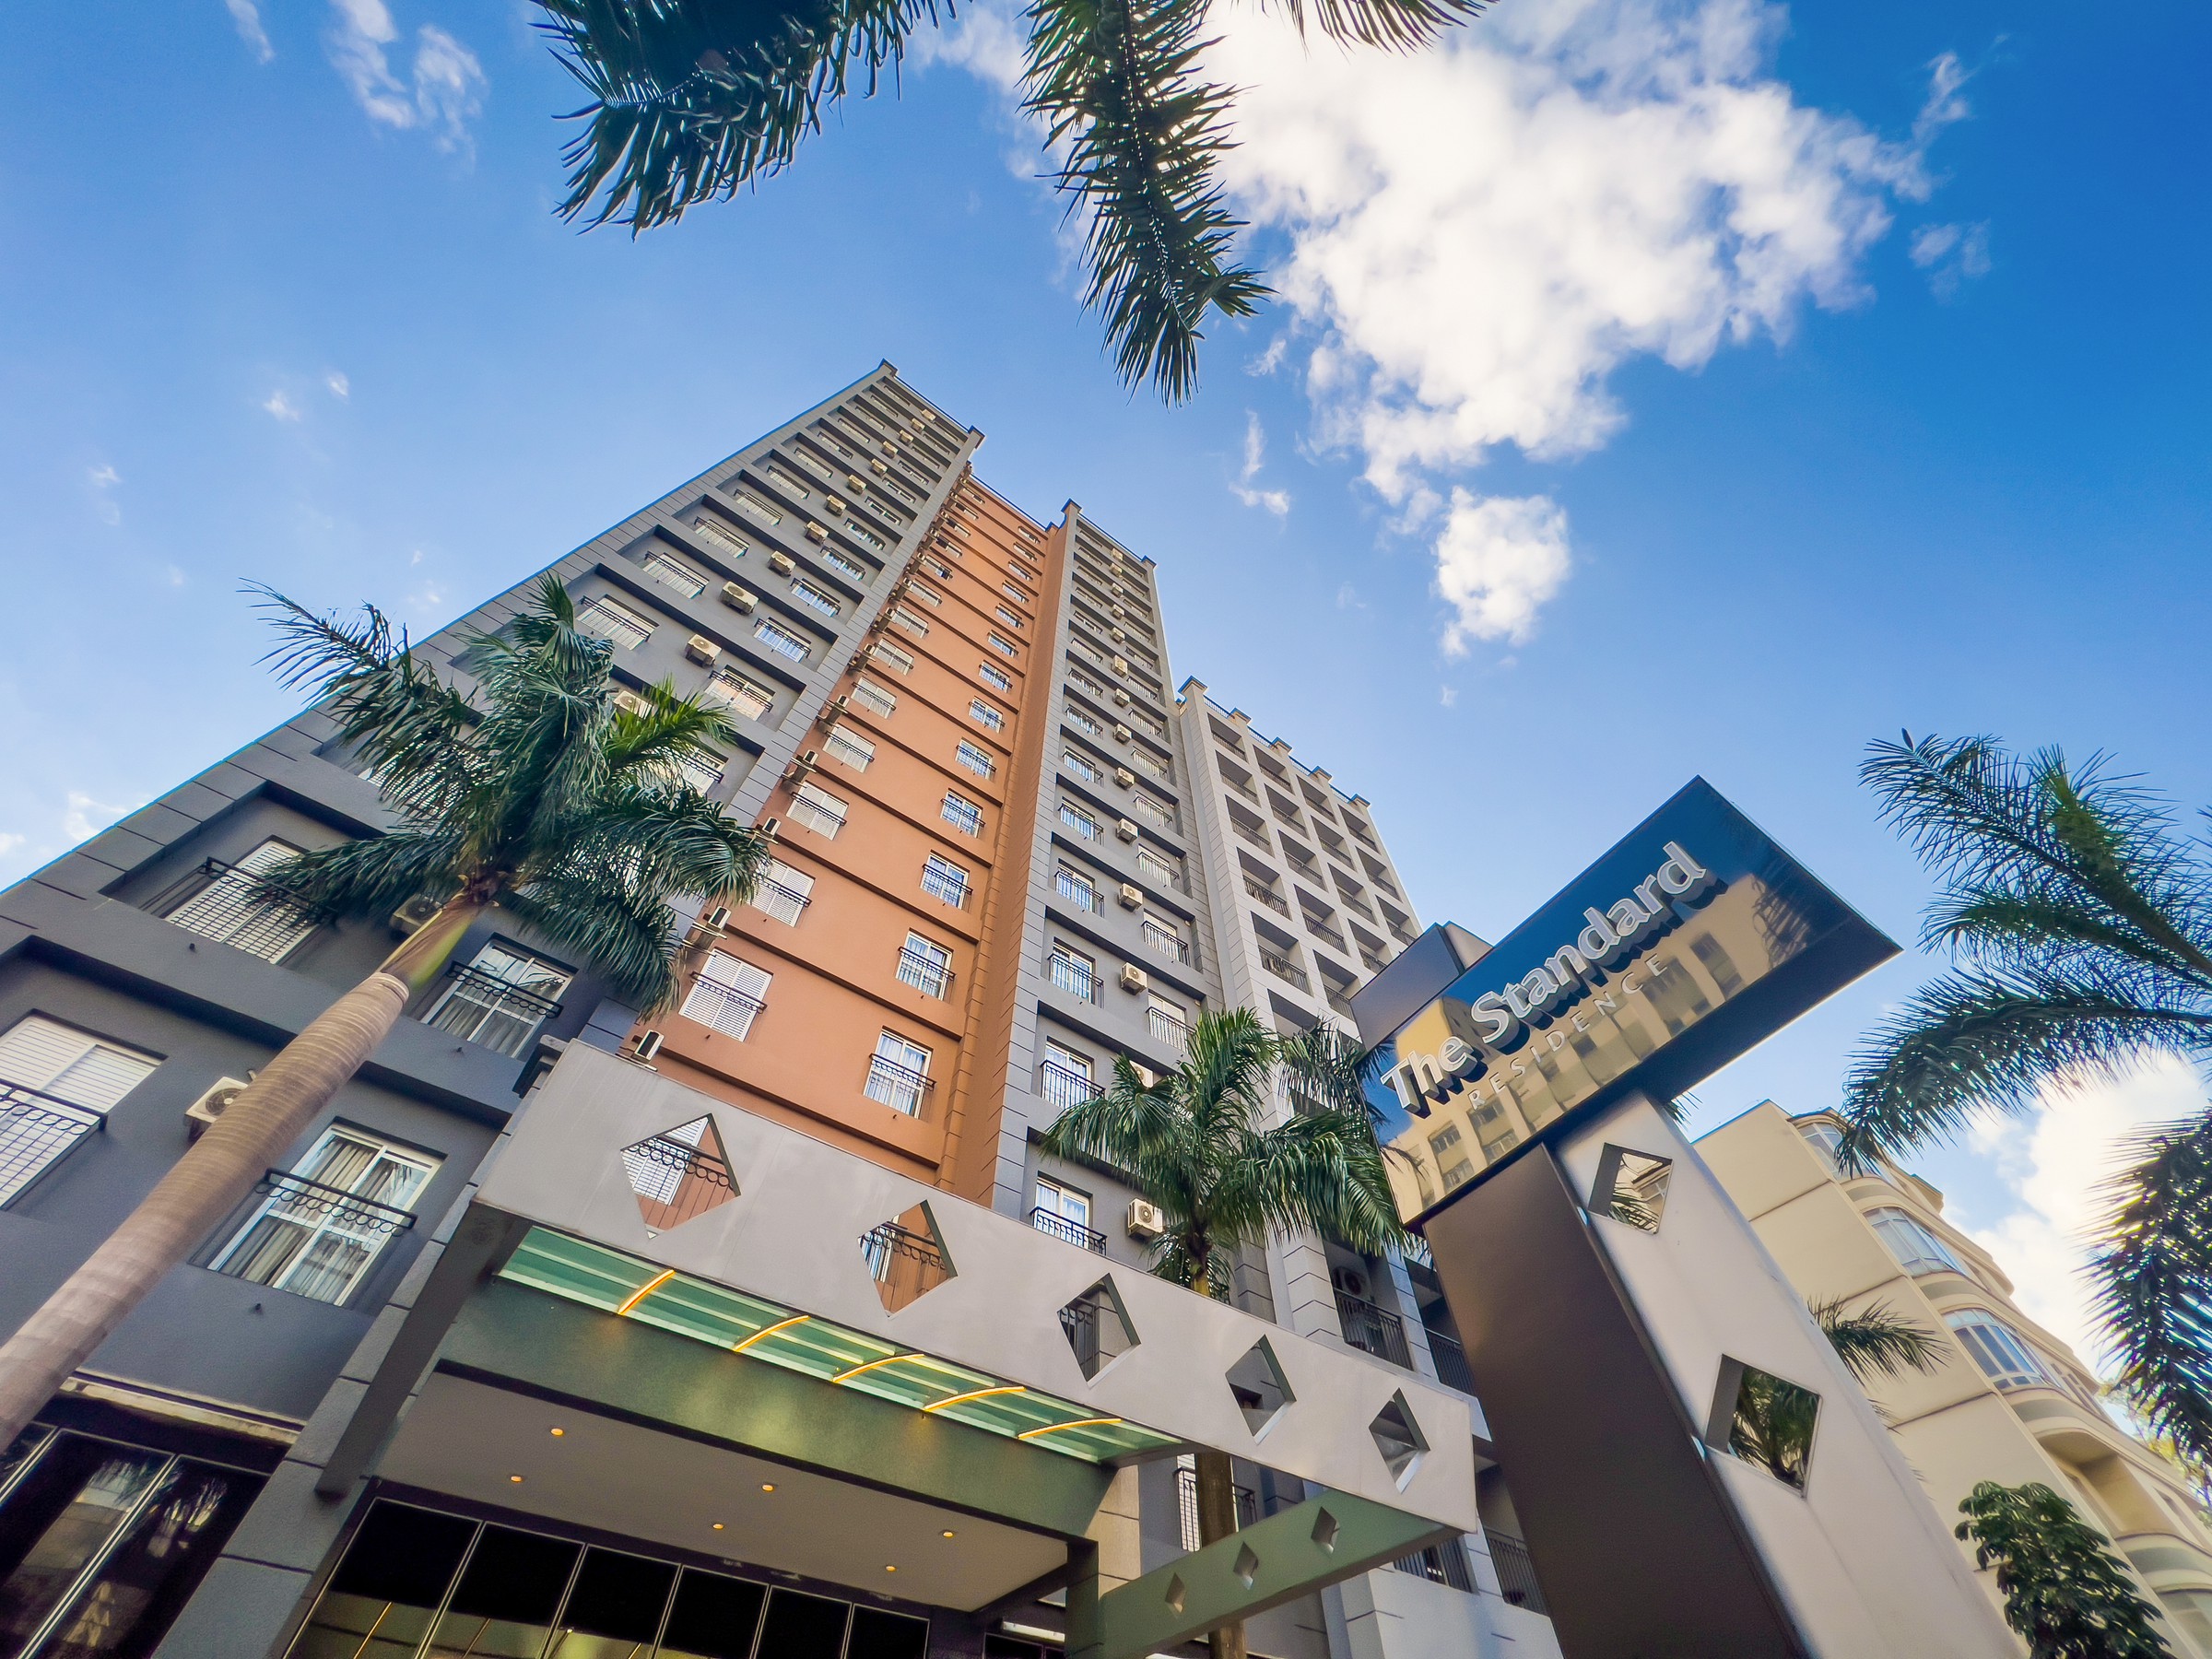 Onde realizar eventos em São Paulo: descubra o Hotel The Standard Higienópolis